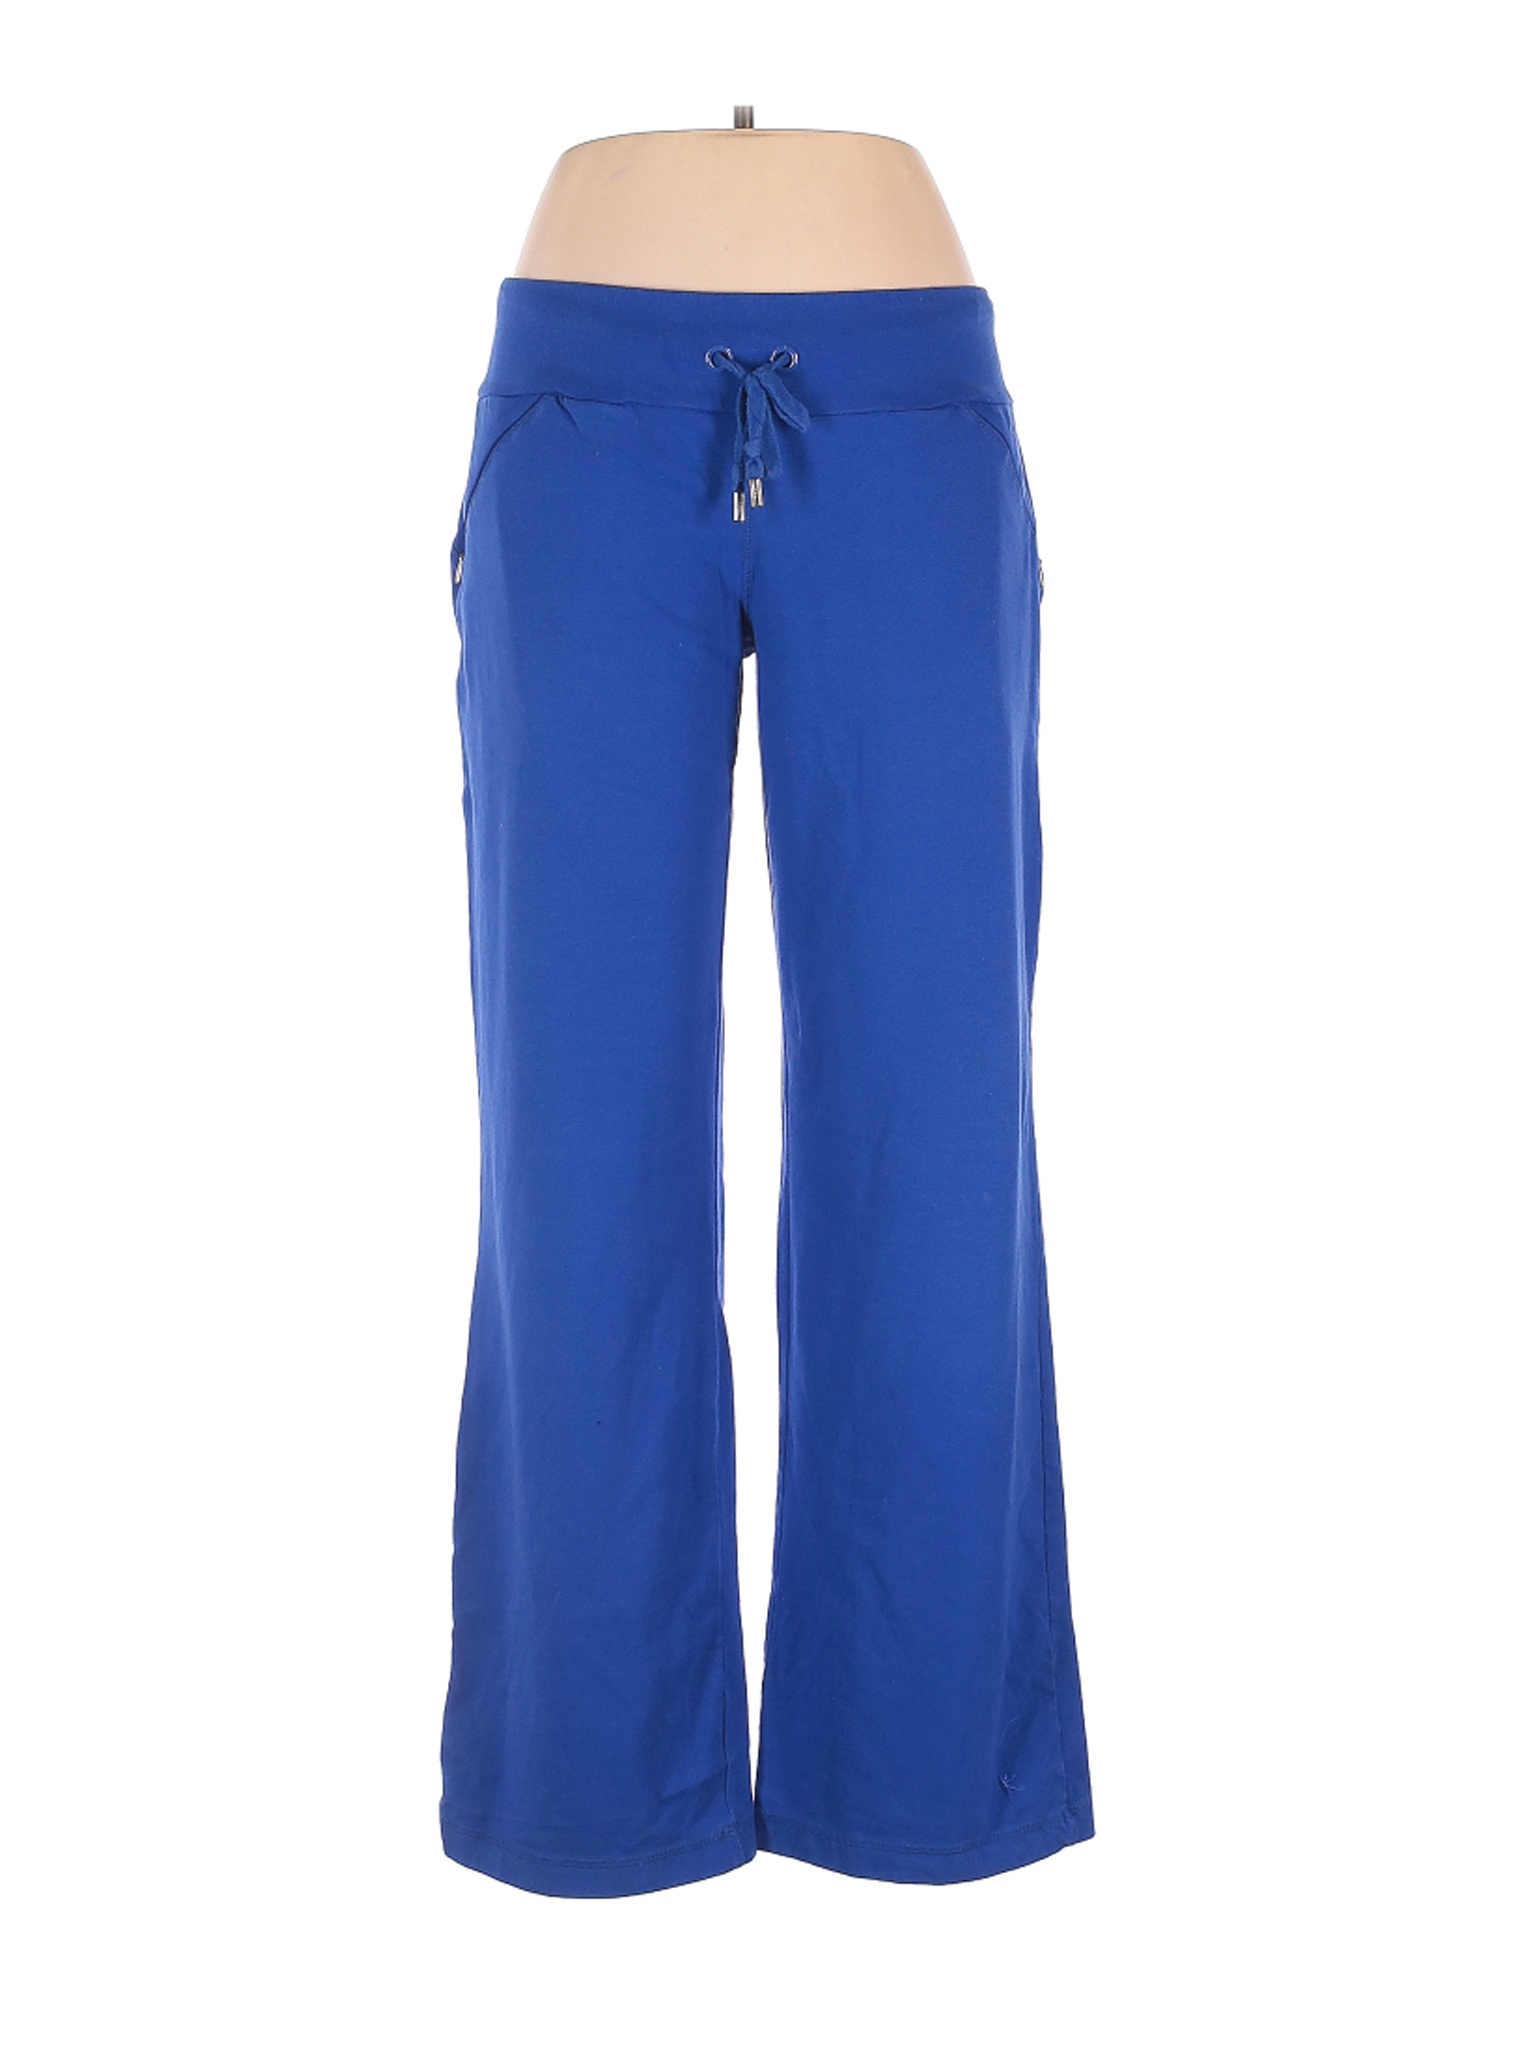 Danskin Now Women Blue Casual Pants L Petites | eBay